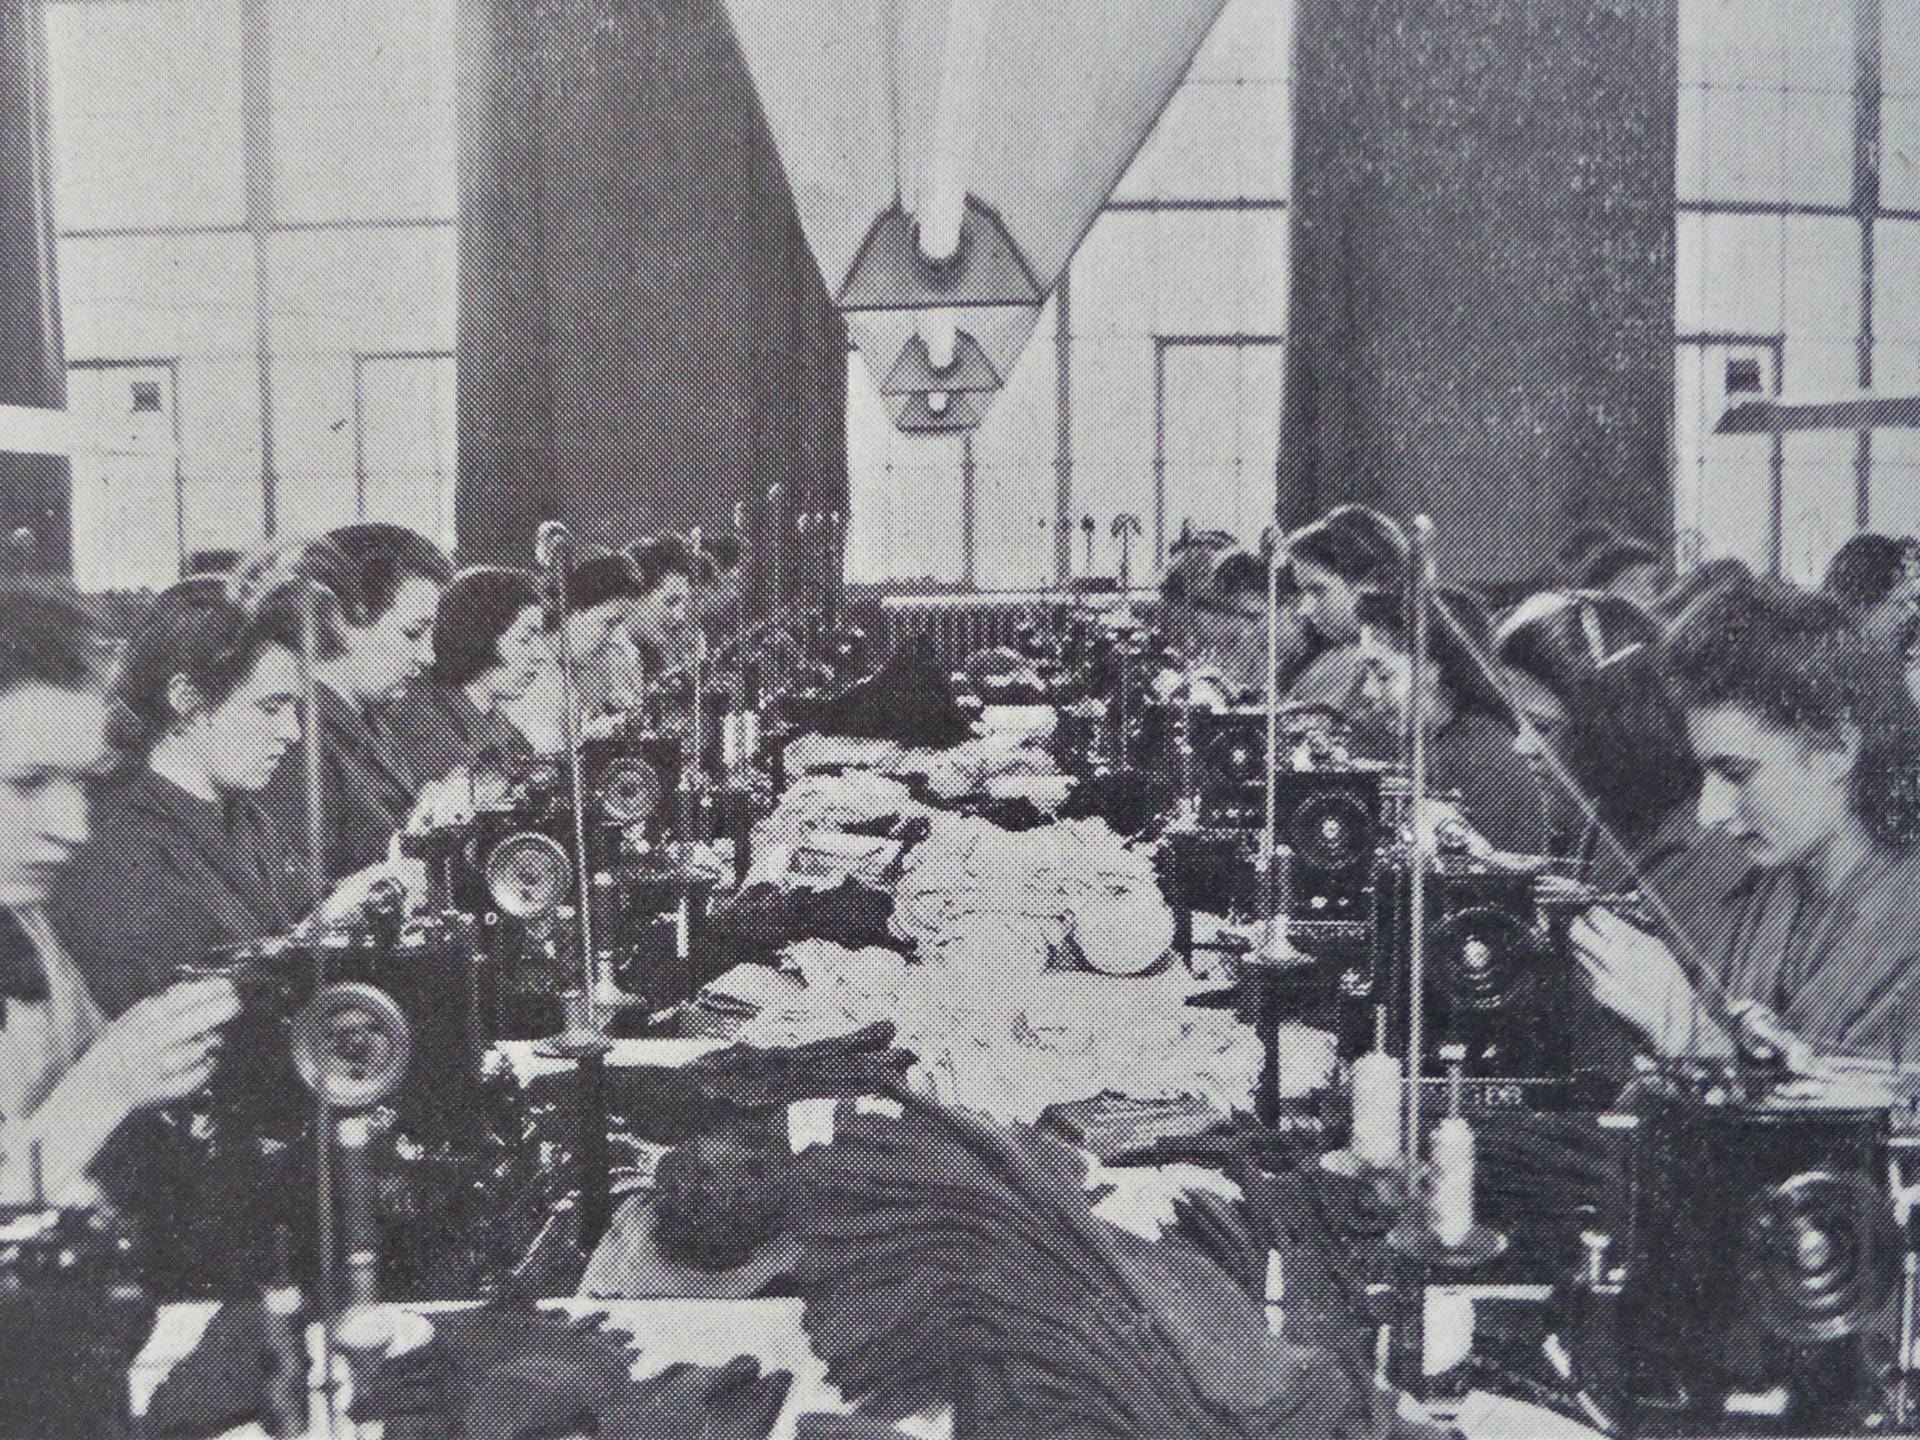 Brosser sewing machines